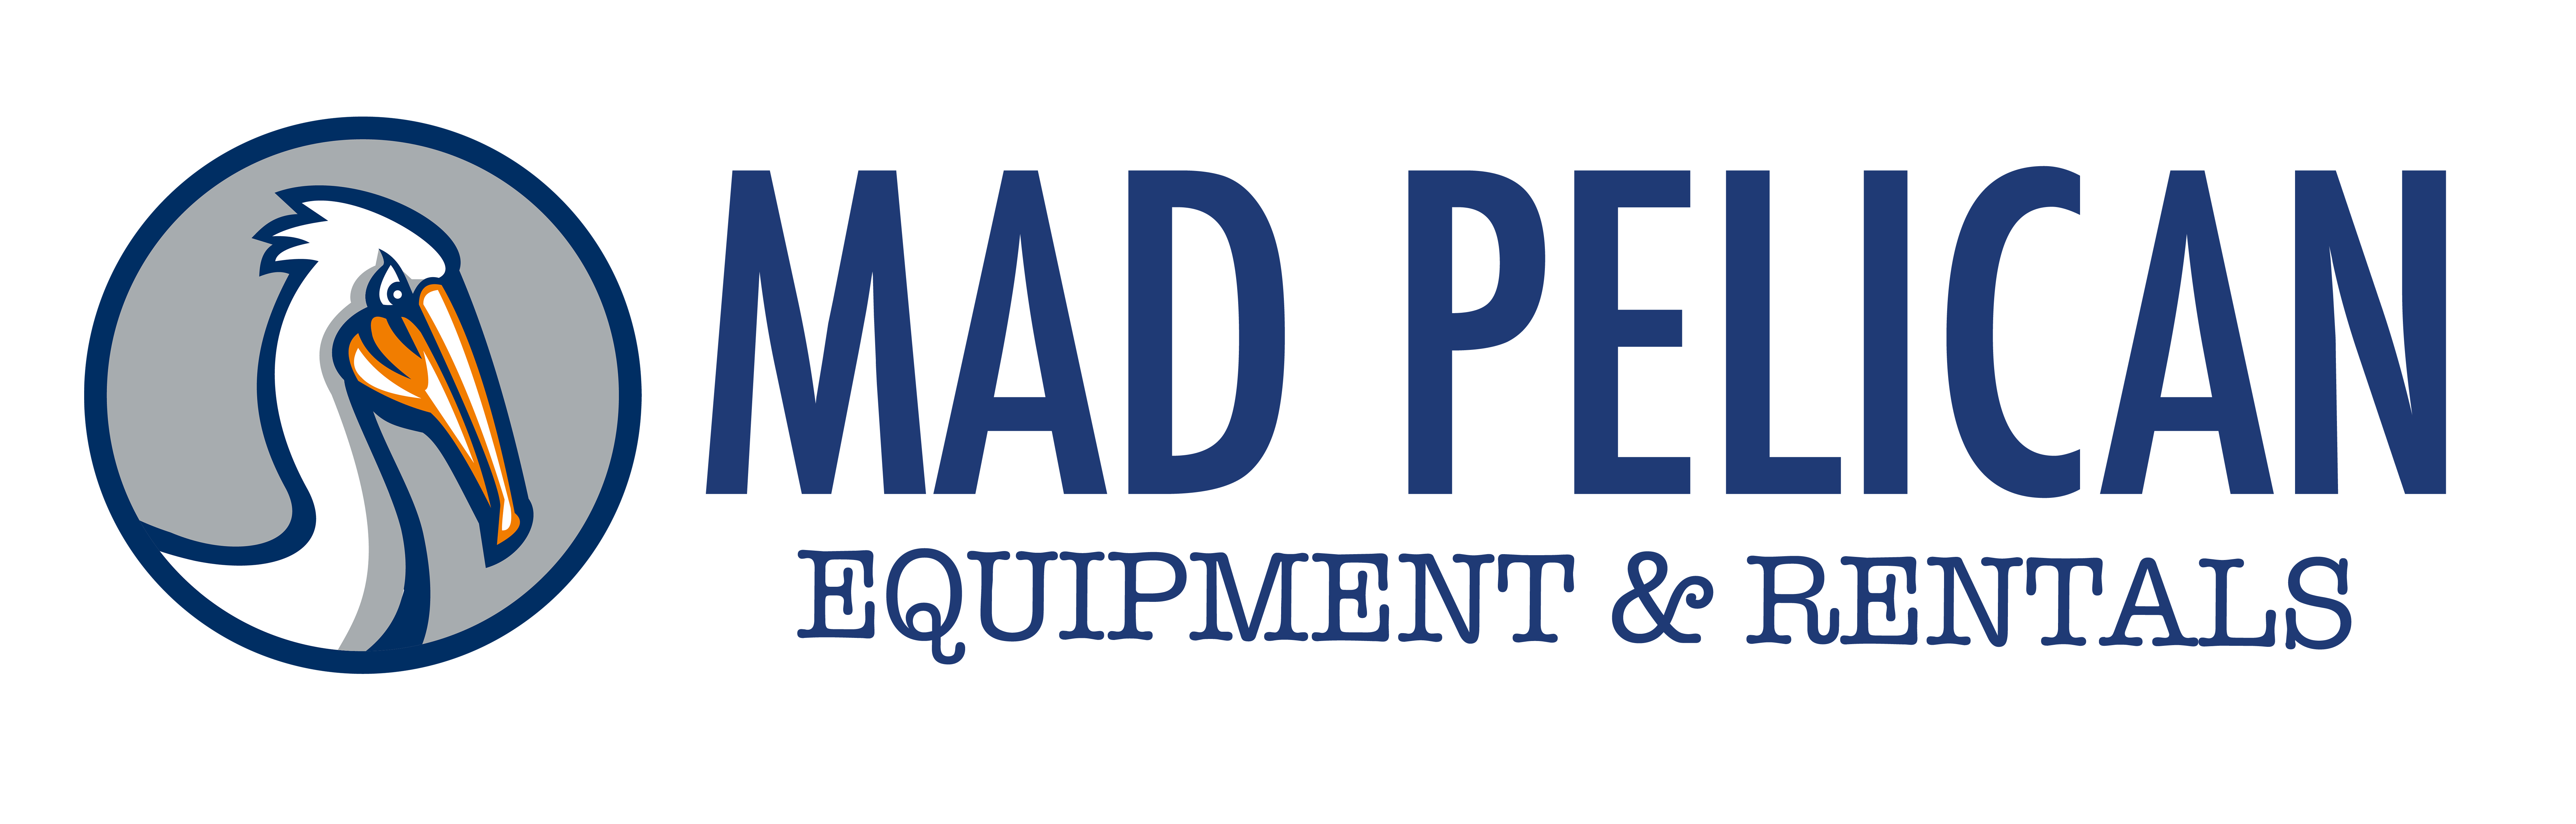 Mad Pelican Equipment & Rentals